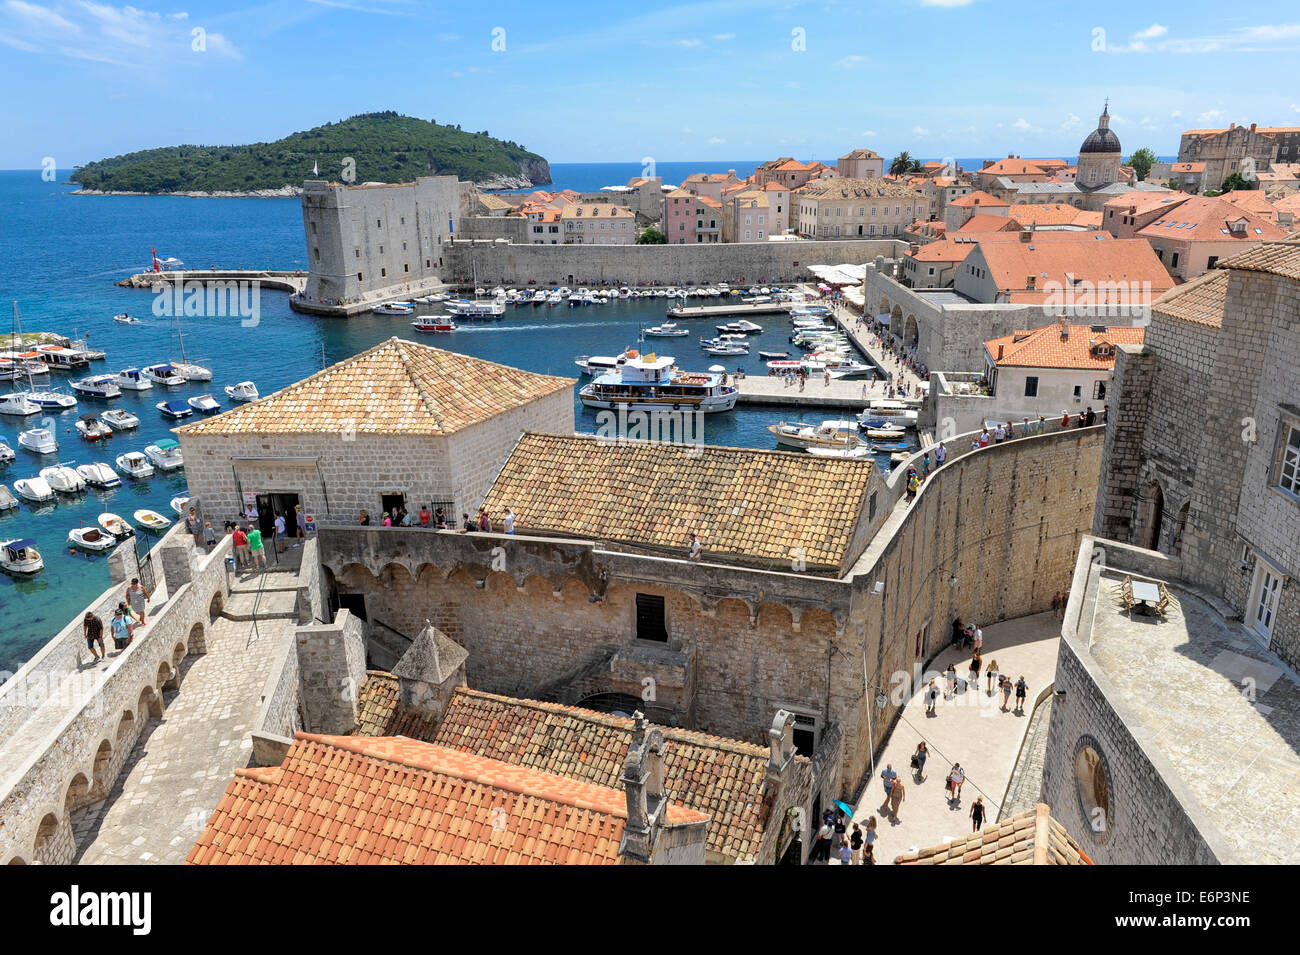 Vue sur la vieille ville de Dubrovnik montrant le port de plaisance, et l'enceinte fortifiée. Banque D'Images